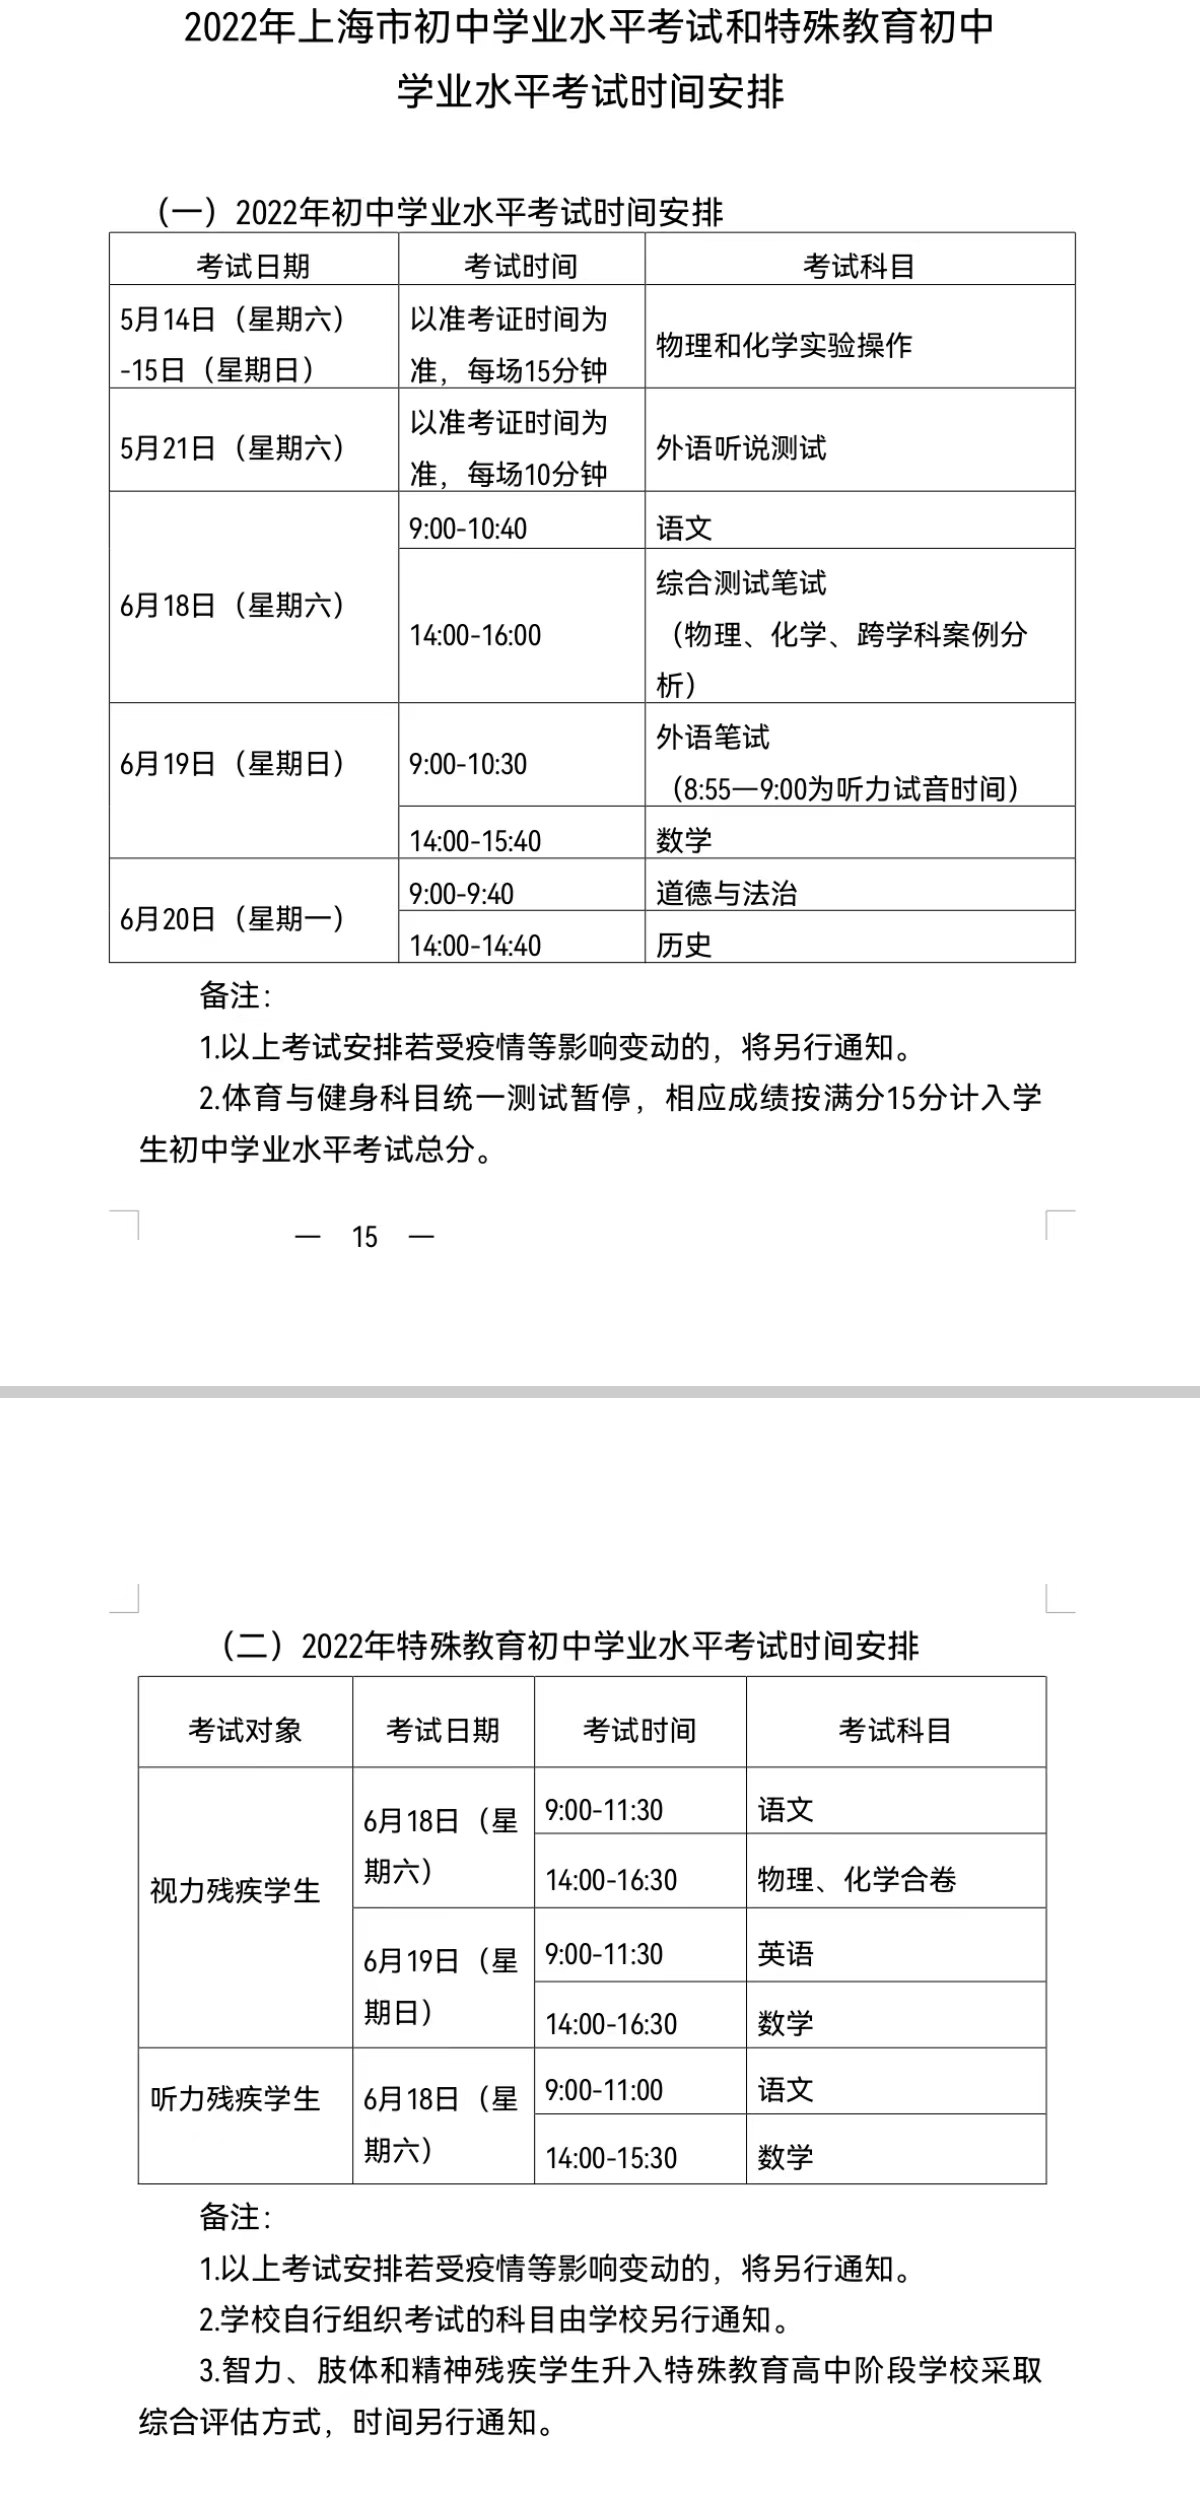 原定的上海中考详细安排。来源：上海市教委文件